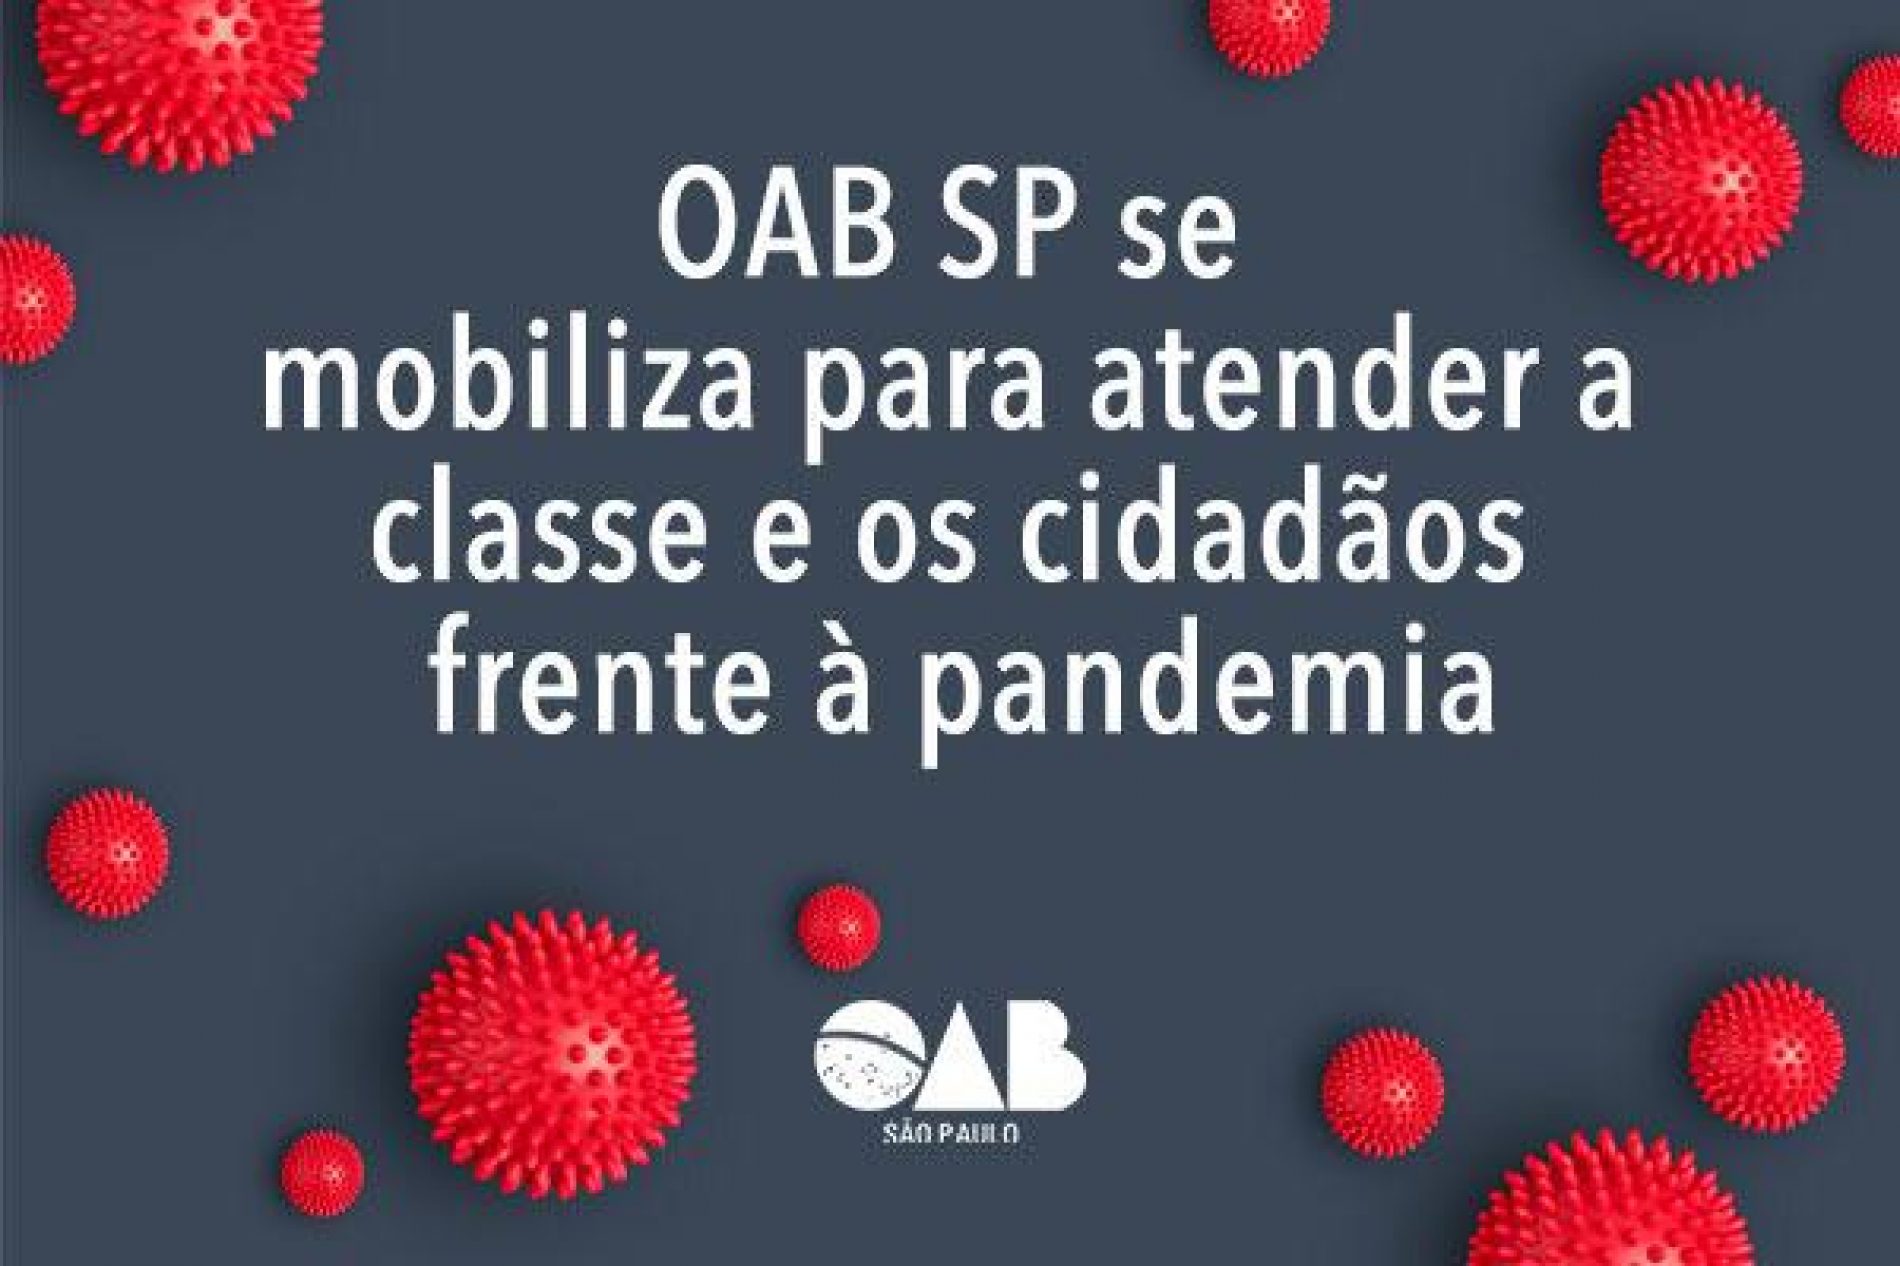 Coronavírus: OAB SP mobiliza a Advocacia paulista para o enfrentamento da pandemia